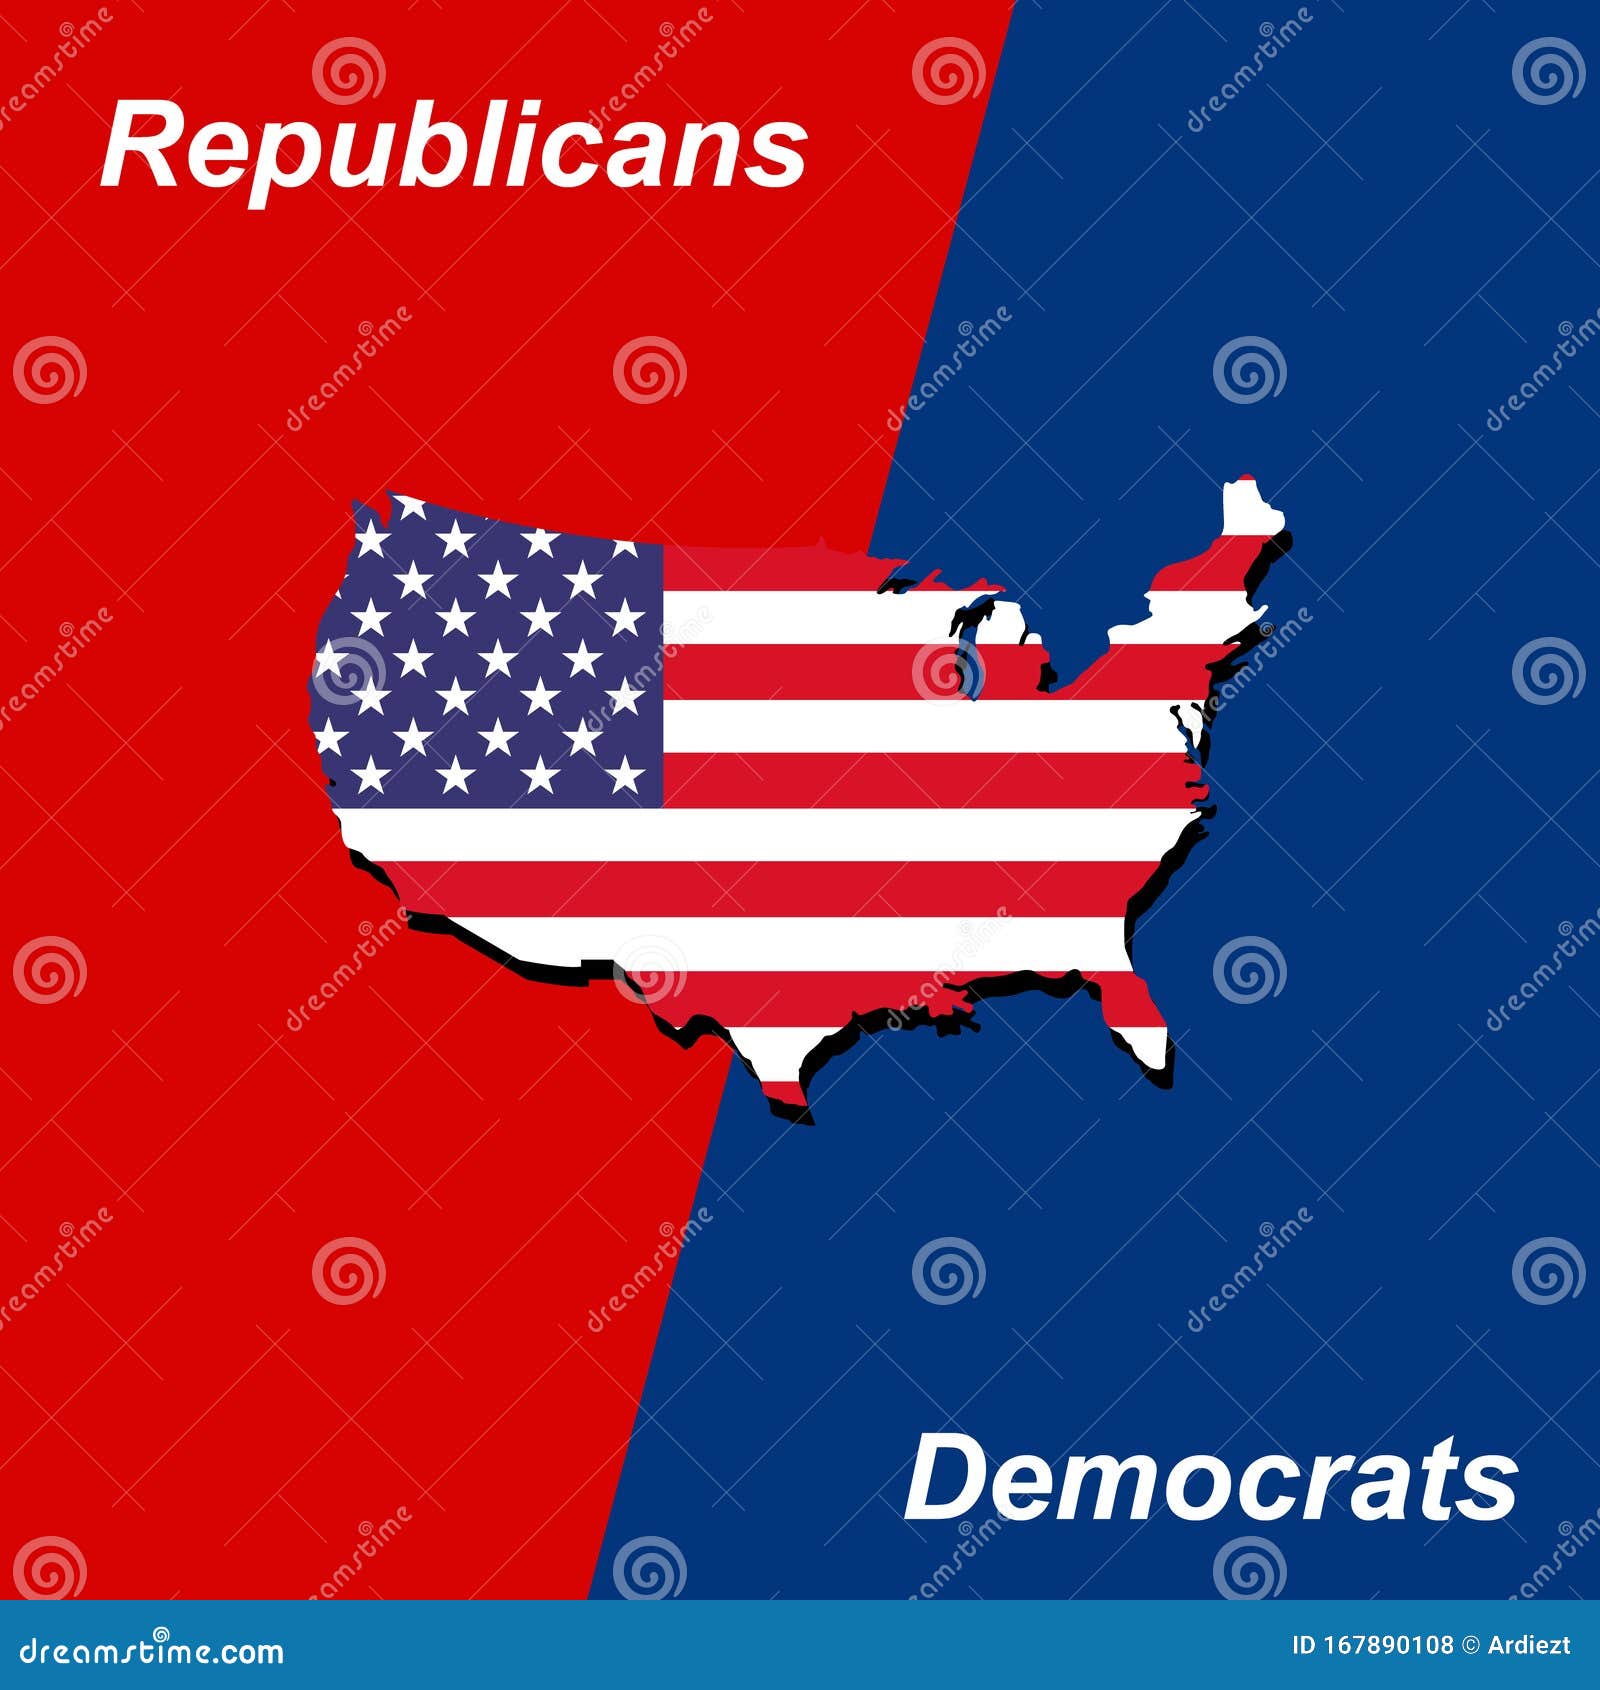 american politics republicans vs democrats  